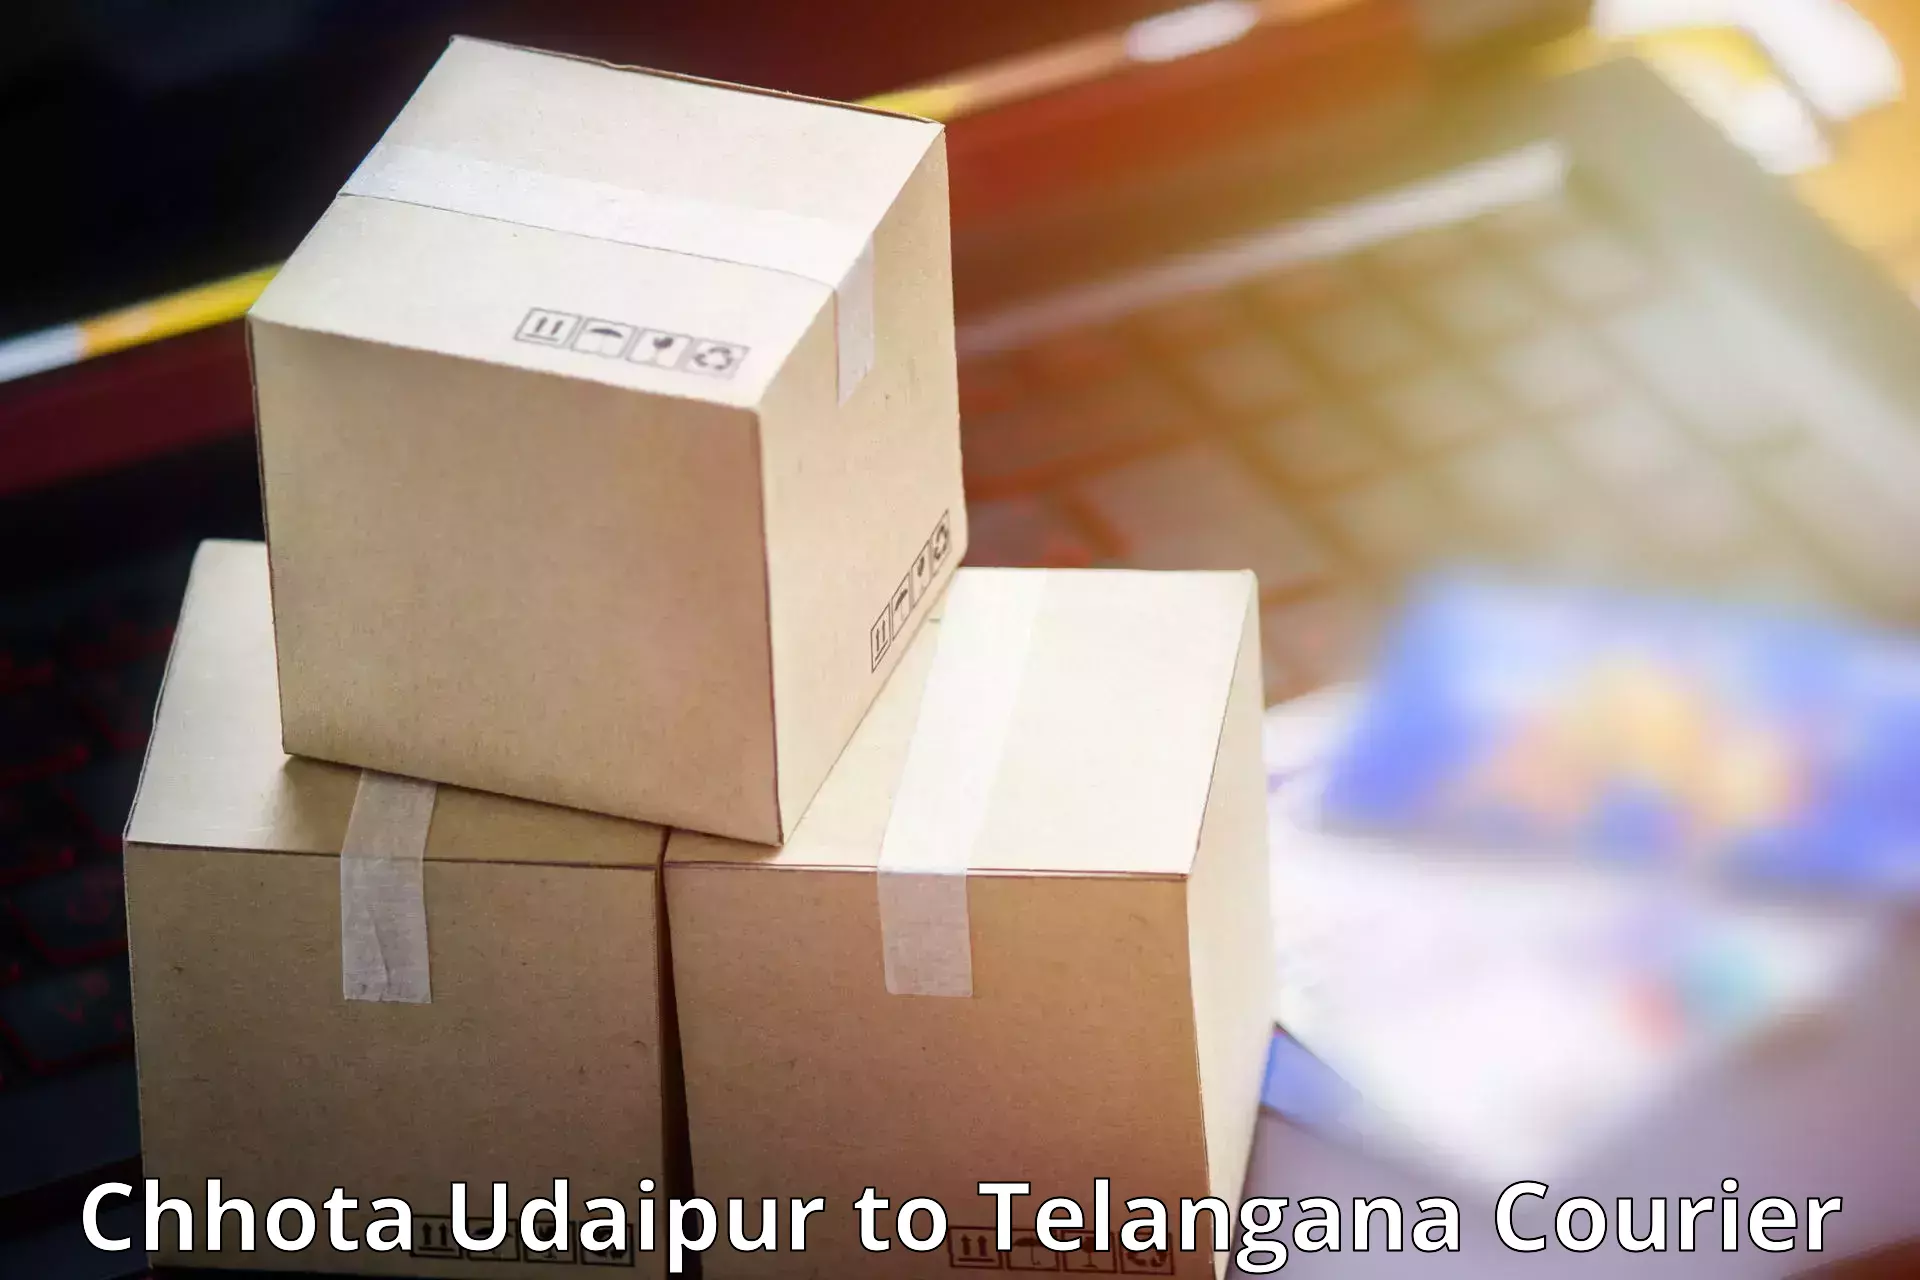 E-commerce shipping partnerships Chhota Udaipur to Ramagundam